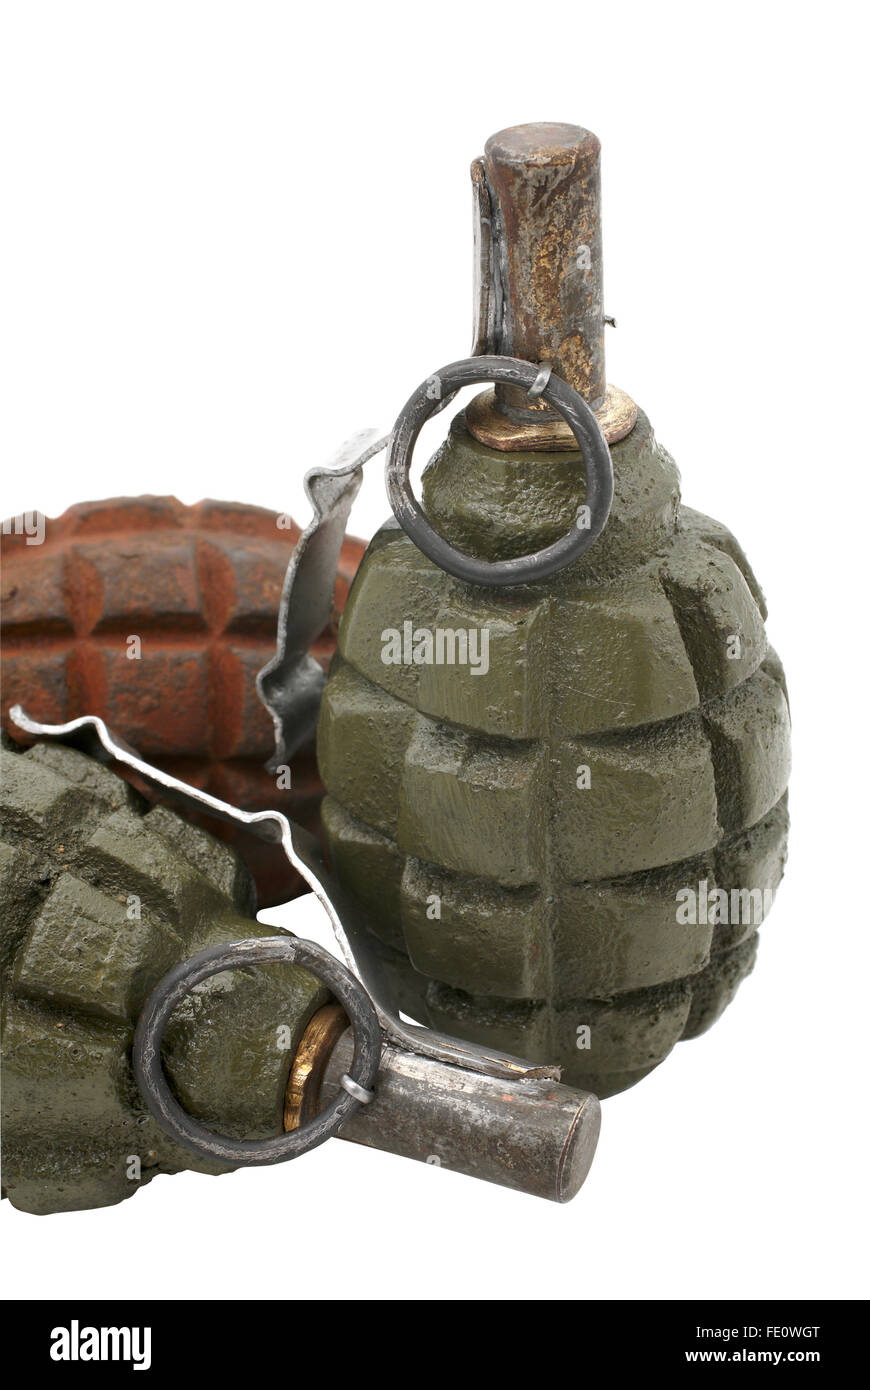 Mano sovietica granate (slang - ananassi) isolate su uno sfondo bianco. Foto Stock